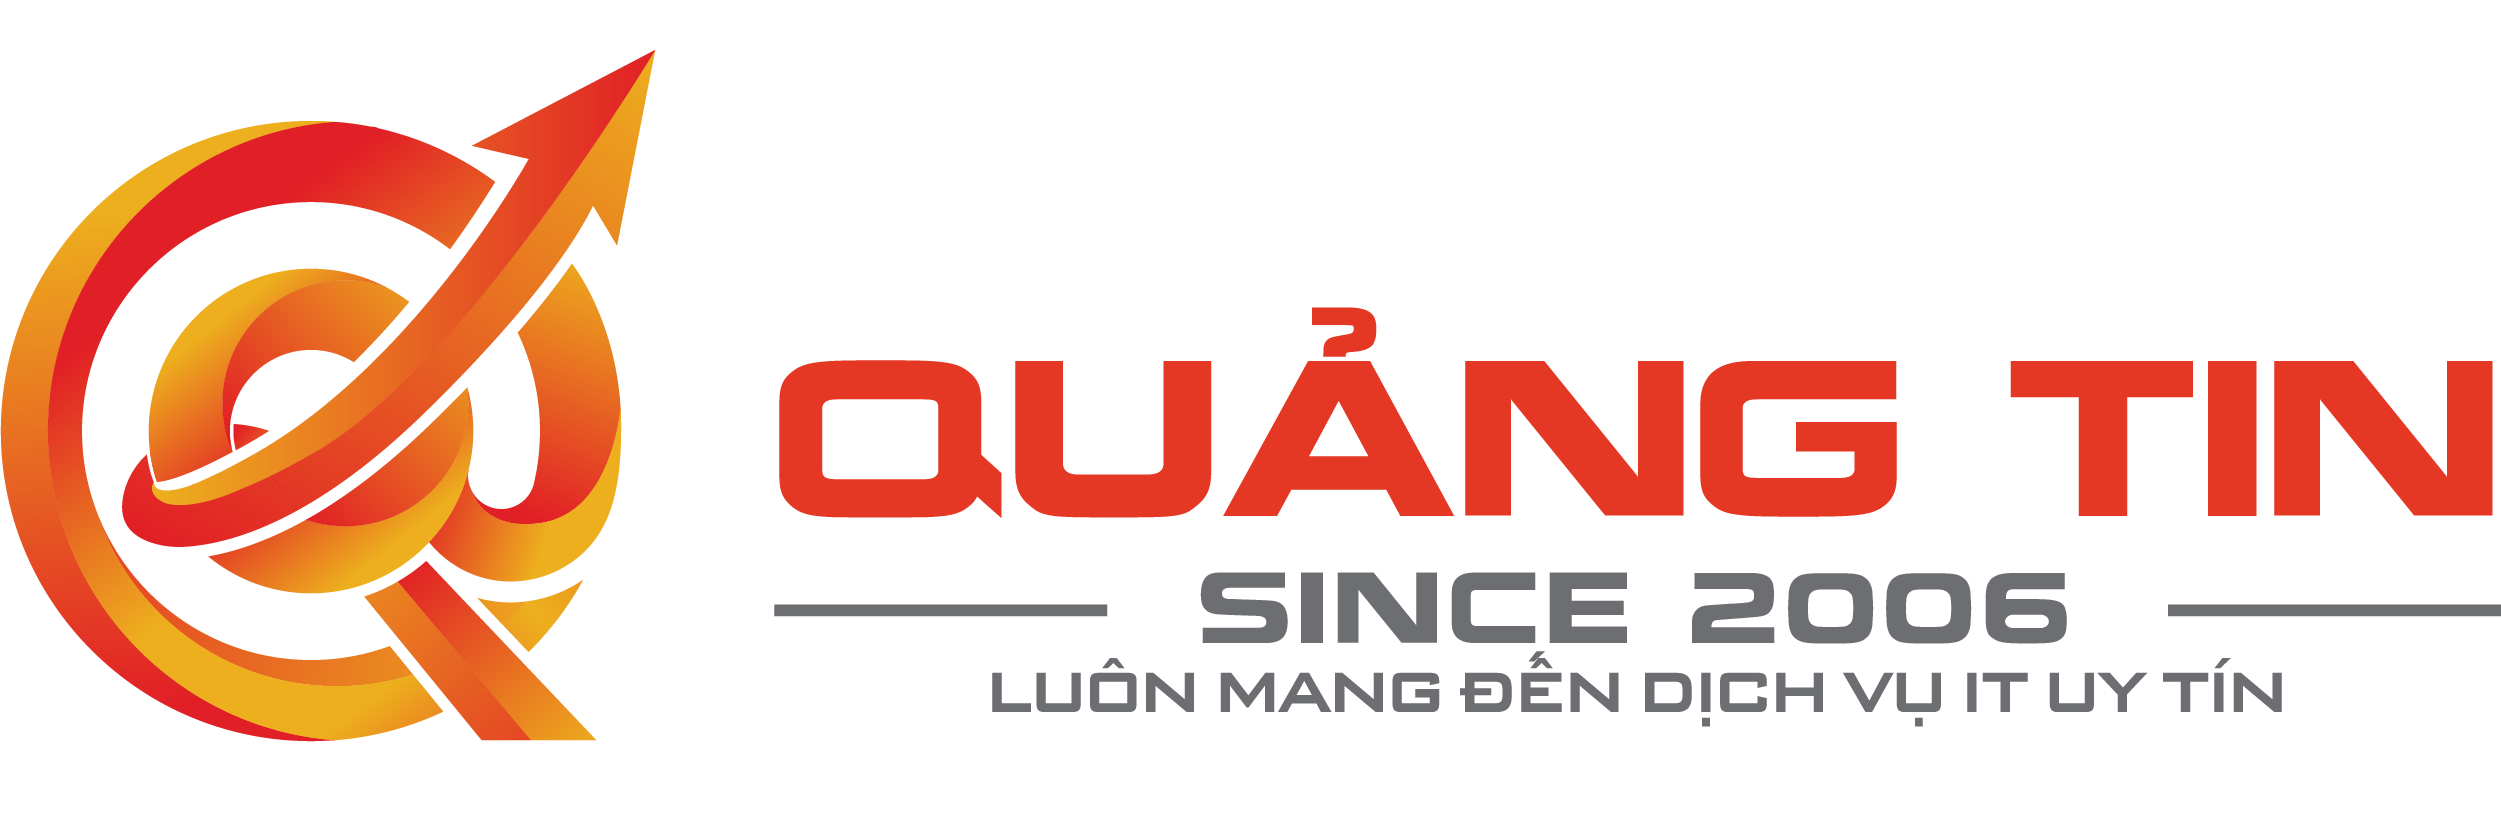 logo Quảng Tin